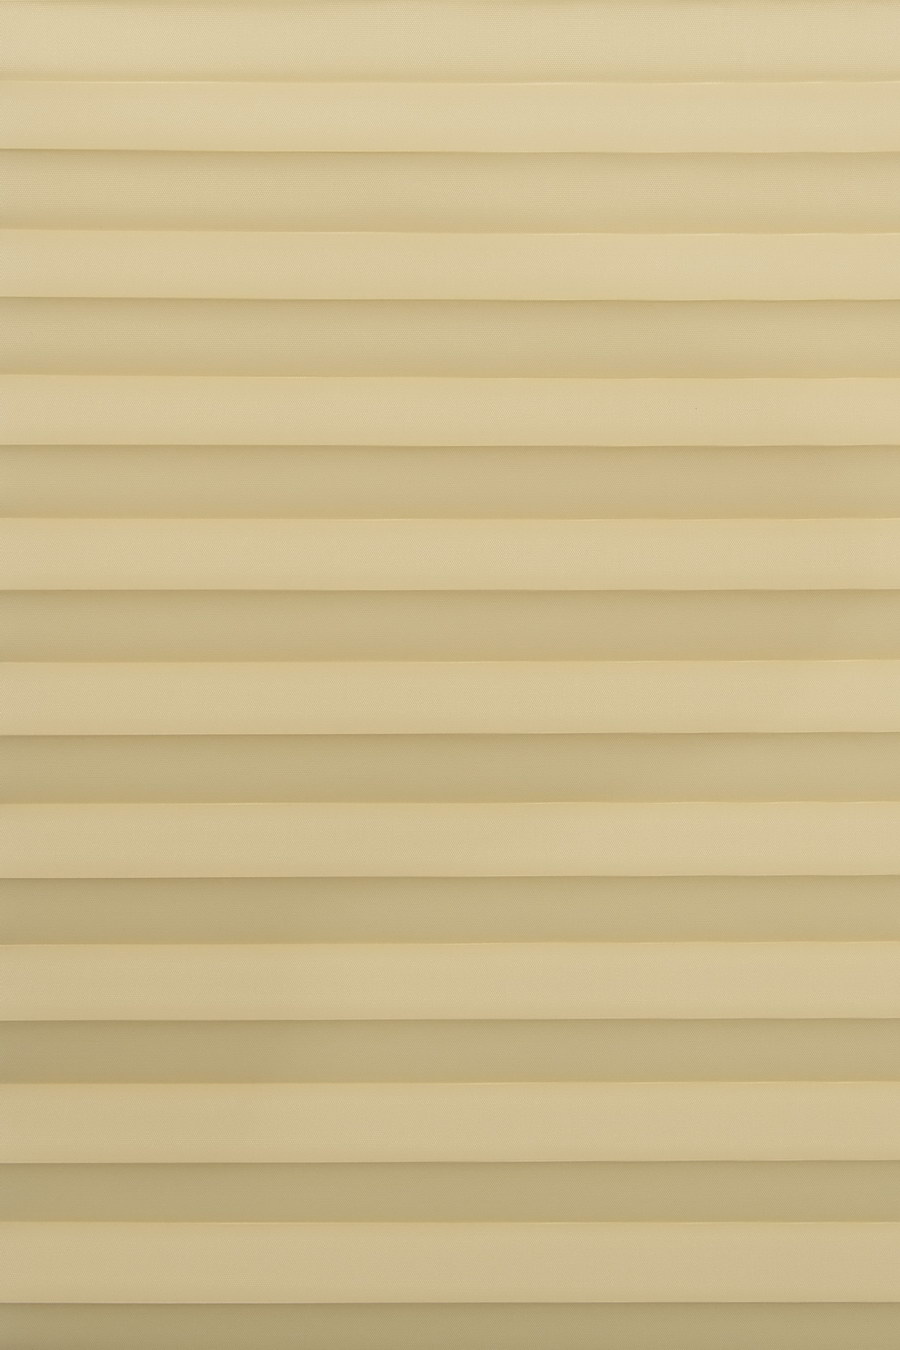 Ткань PALADO PERLMUTT white-gold 20234 для штор плиссе